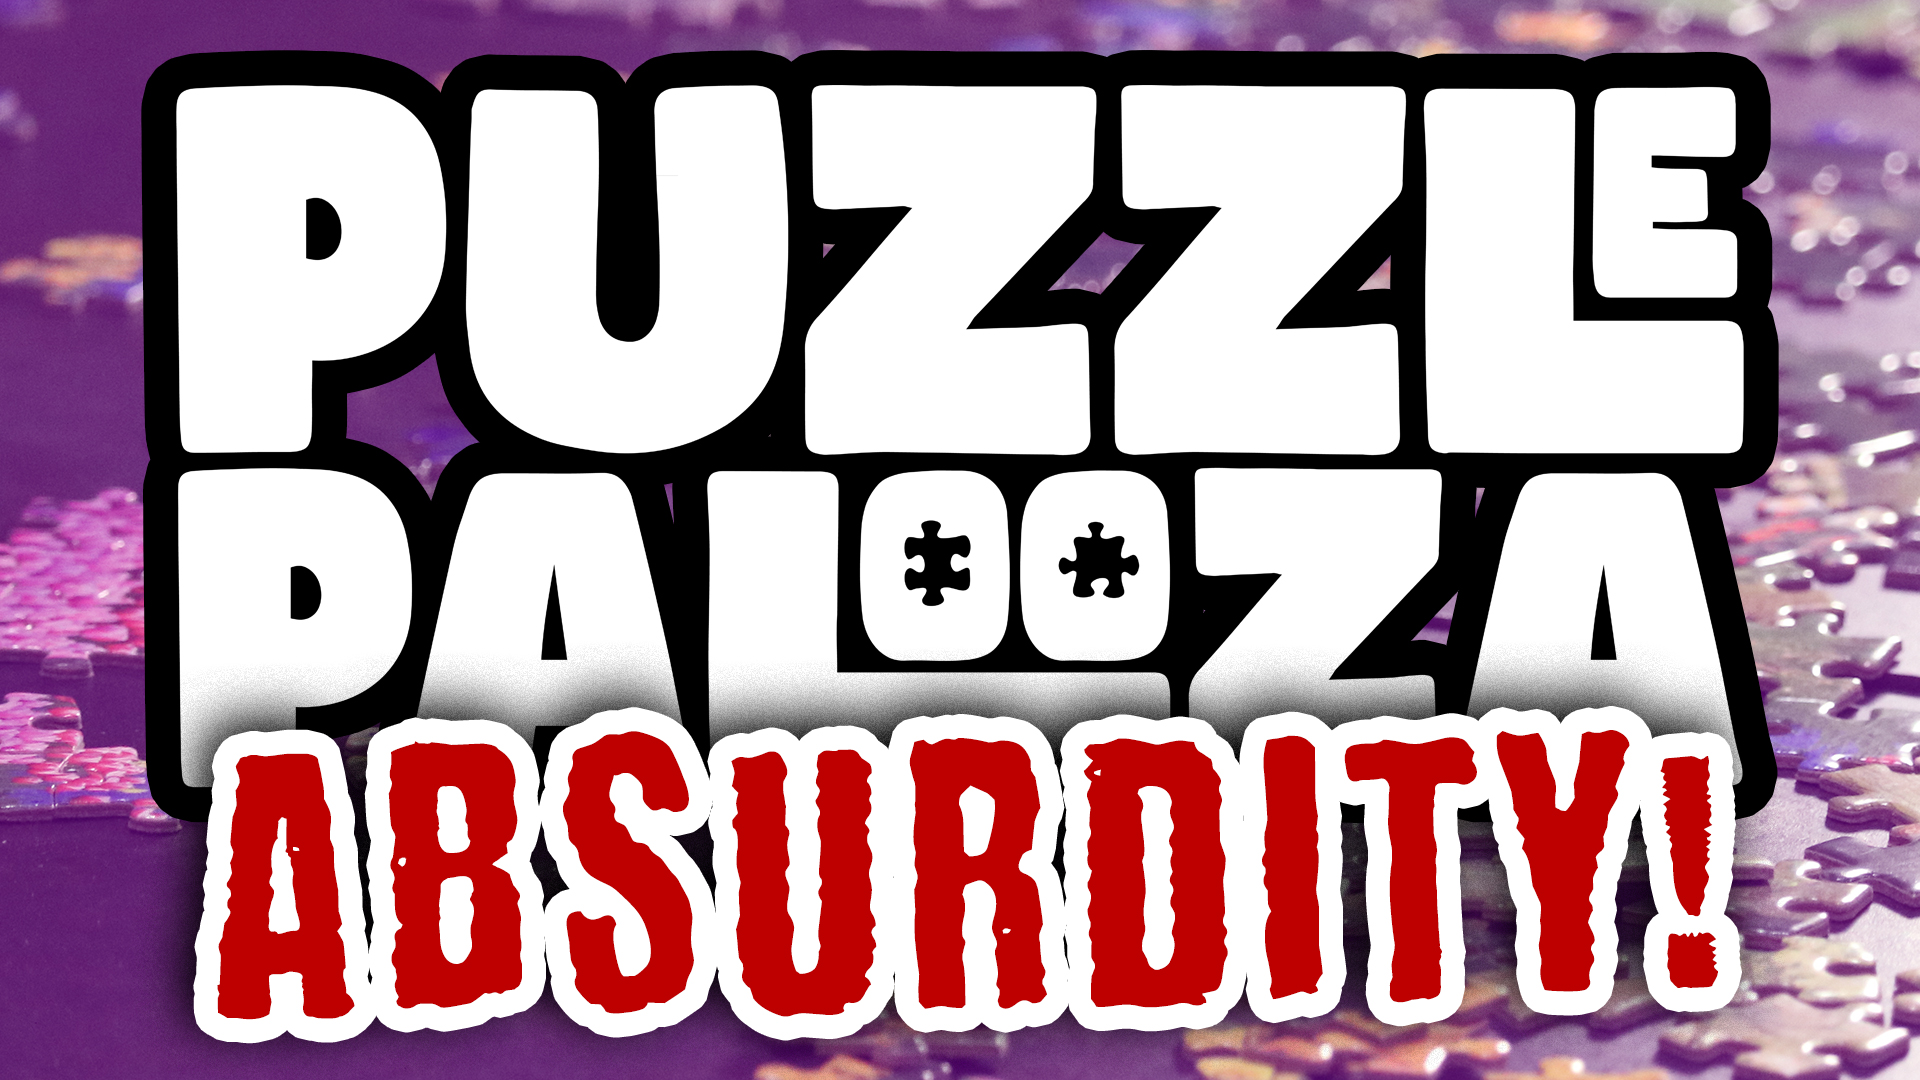 Puzzlepalooza Absurdity Logo